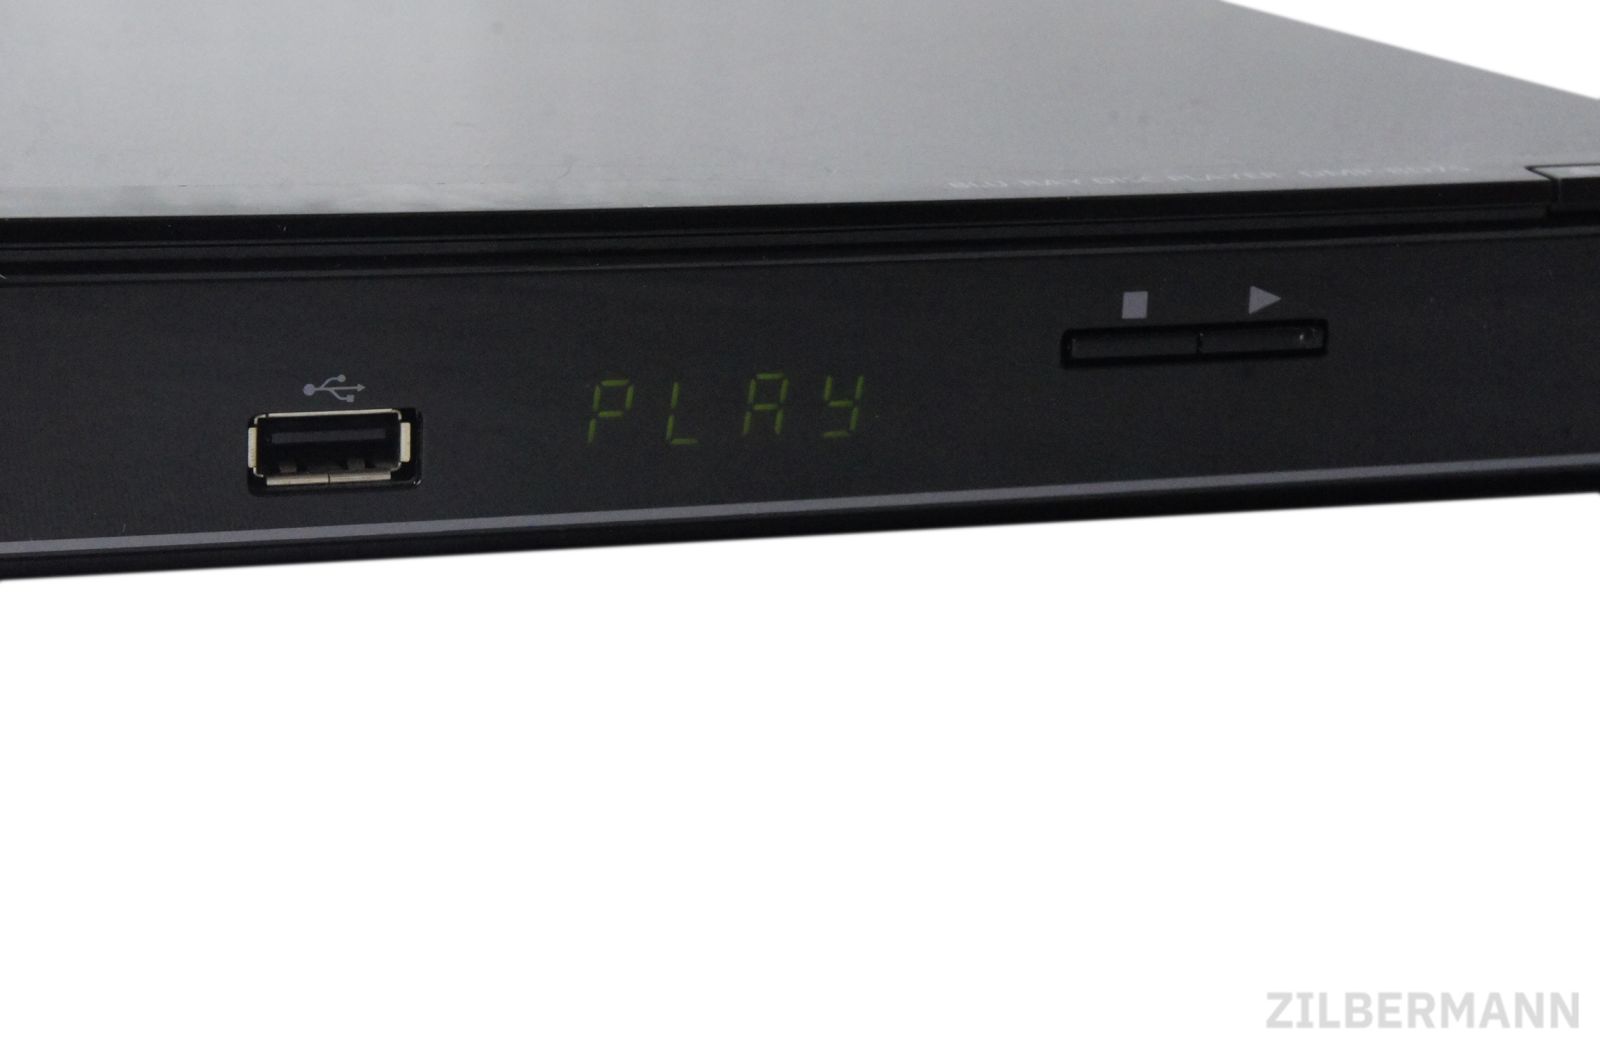 Panasonic_DMP-BD75EG-S_Blu-ray-Player_HDMI_Upscaler_1080p_USB_02